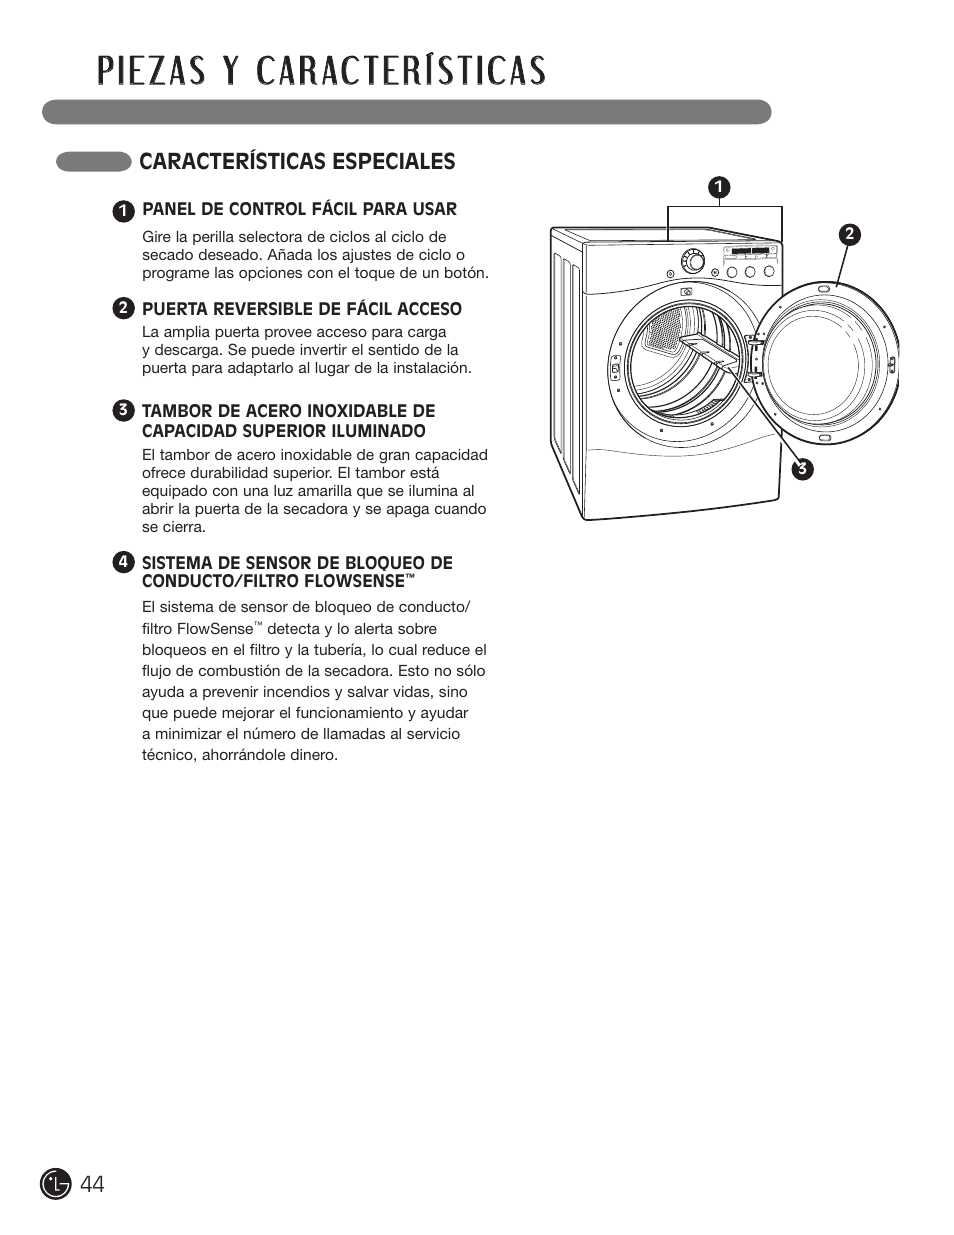 Características especiales | LG D5966W User Manual | Page 44 / 80